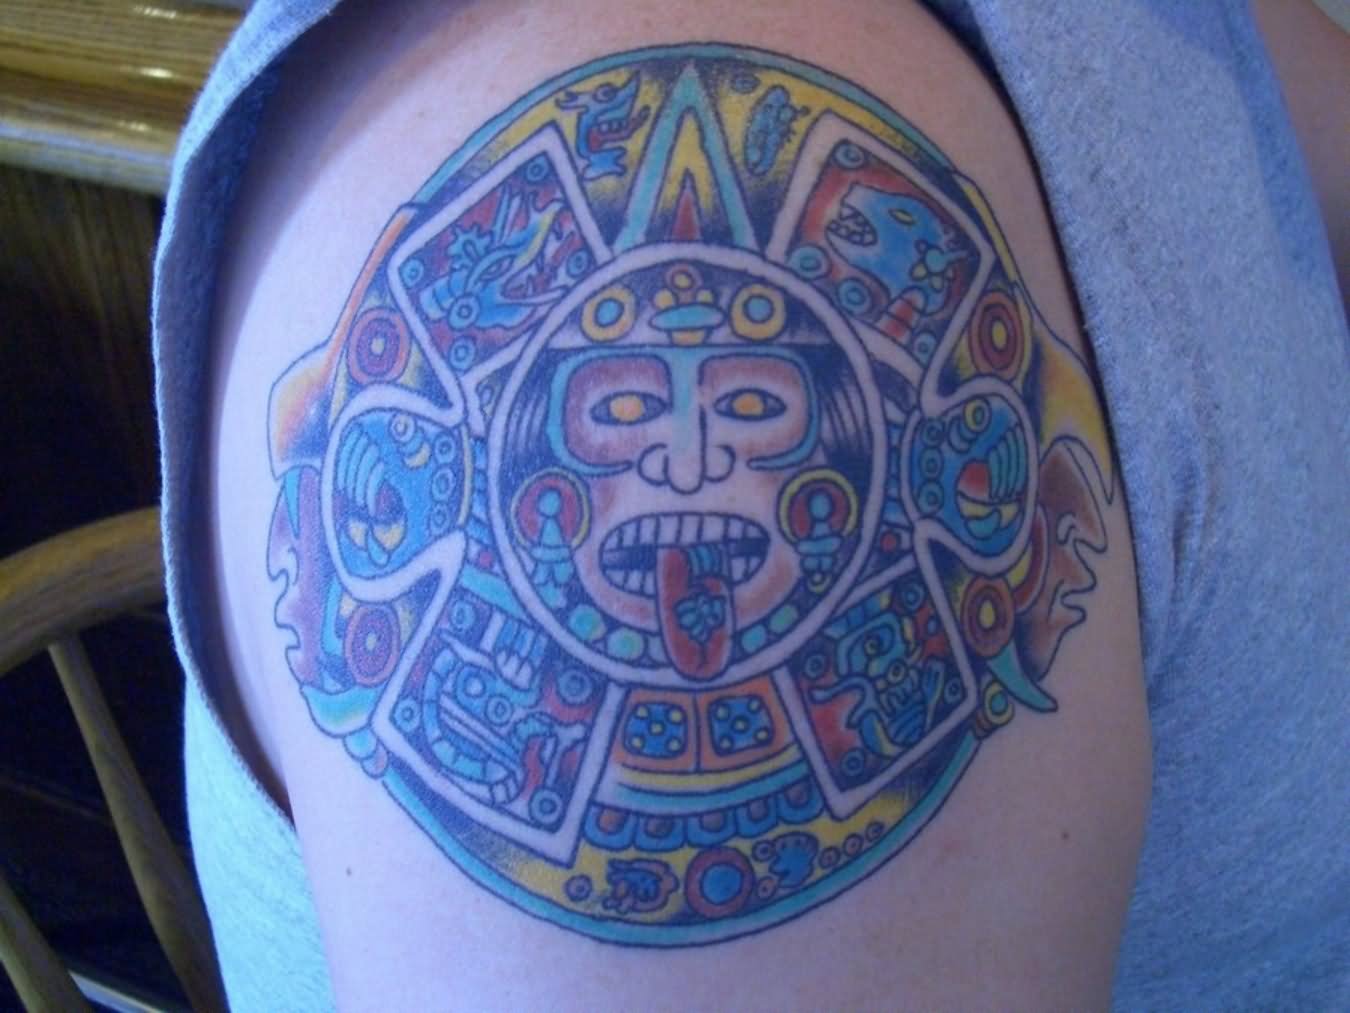 60+ Inspiring Aztec Tattoos Ideas